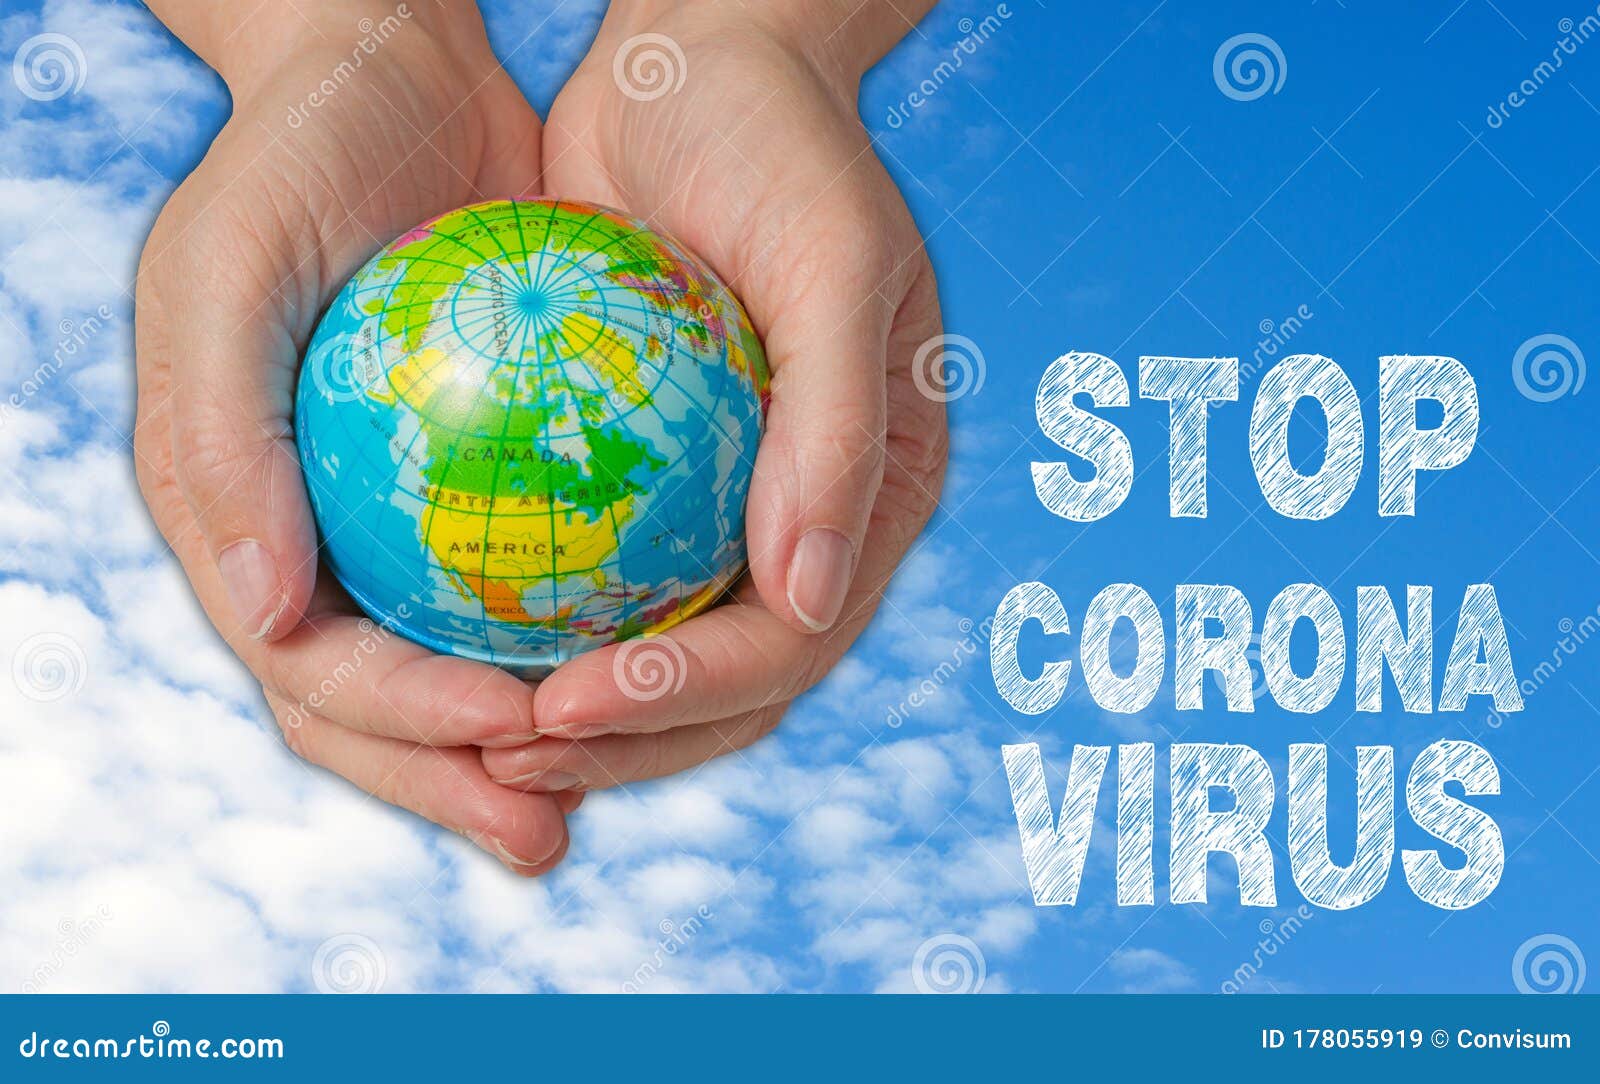 female hands with globe, stop corona virus